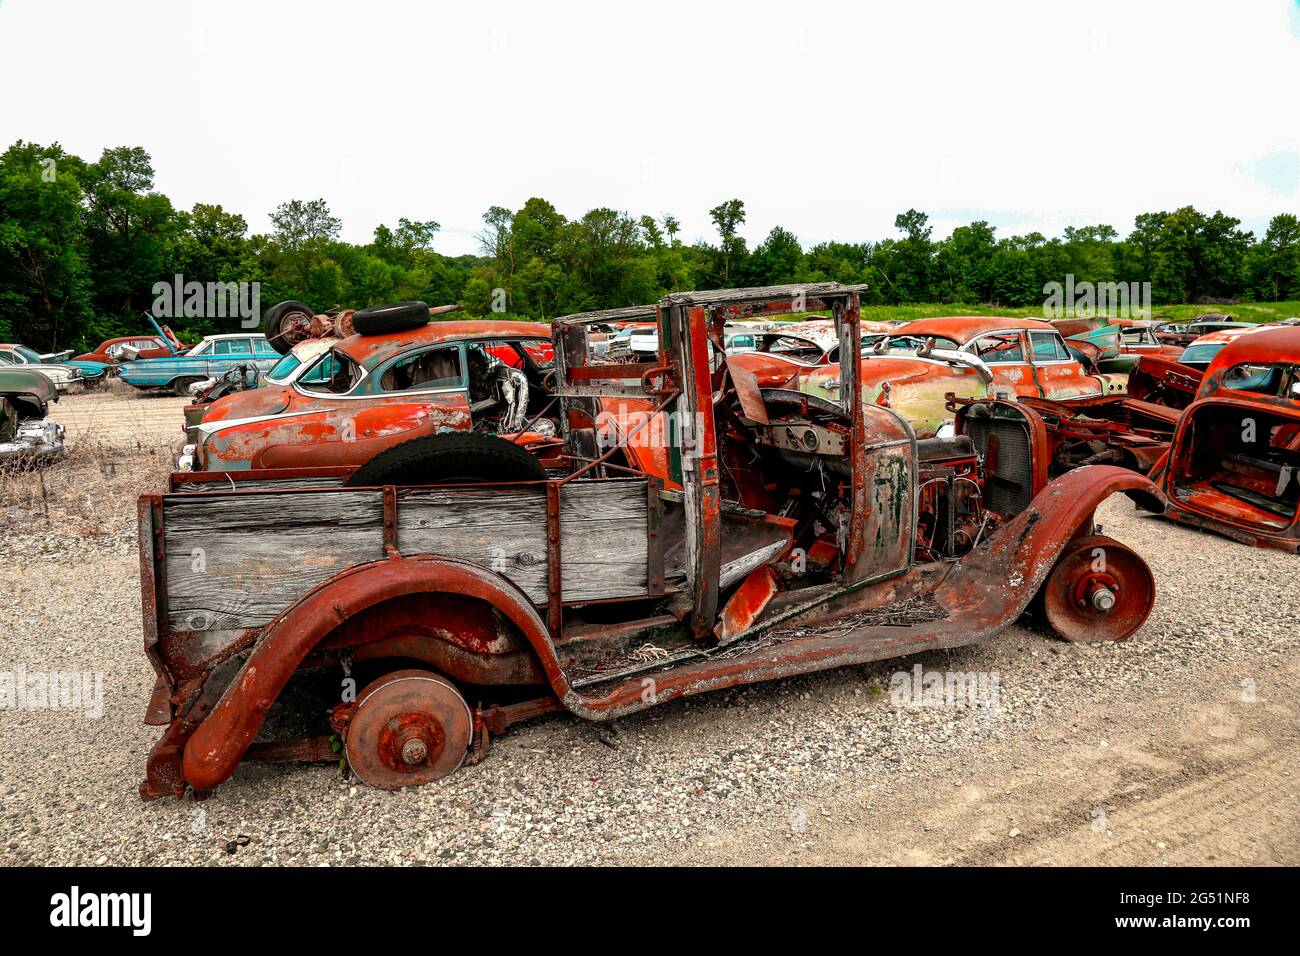 Vieux camion rouillé à junkyard, Minnesota, États-Unis Banque D'Images